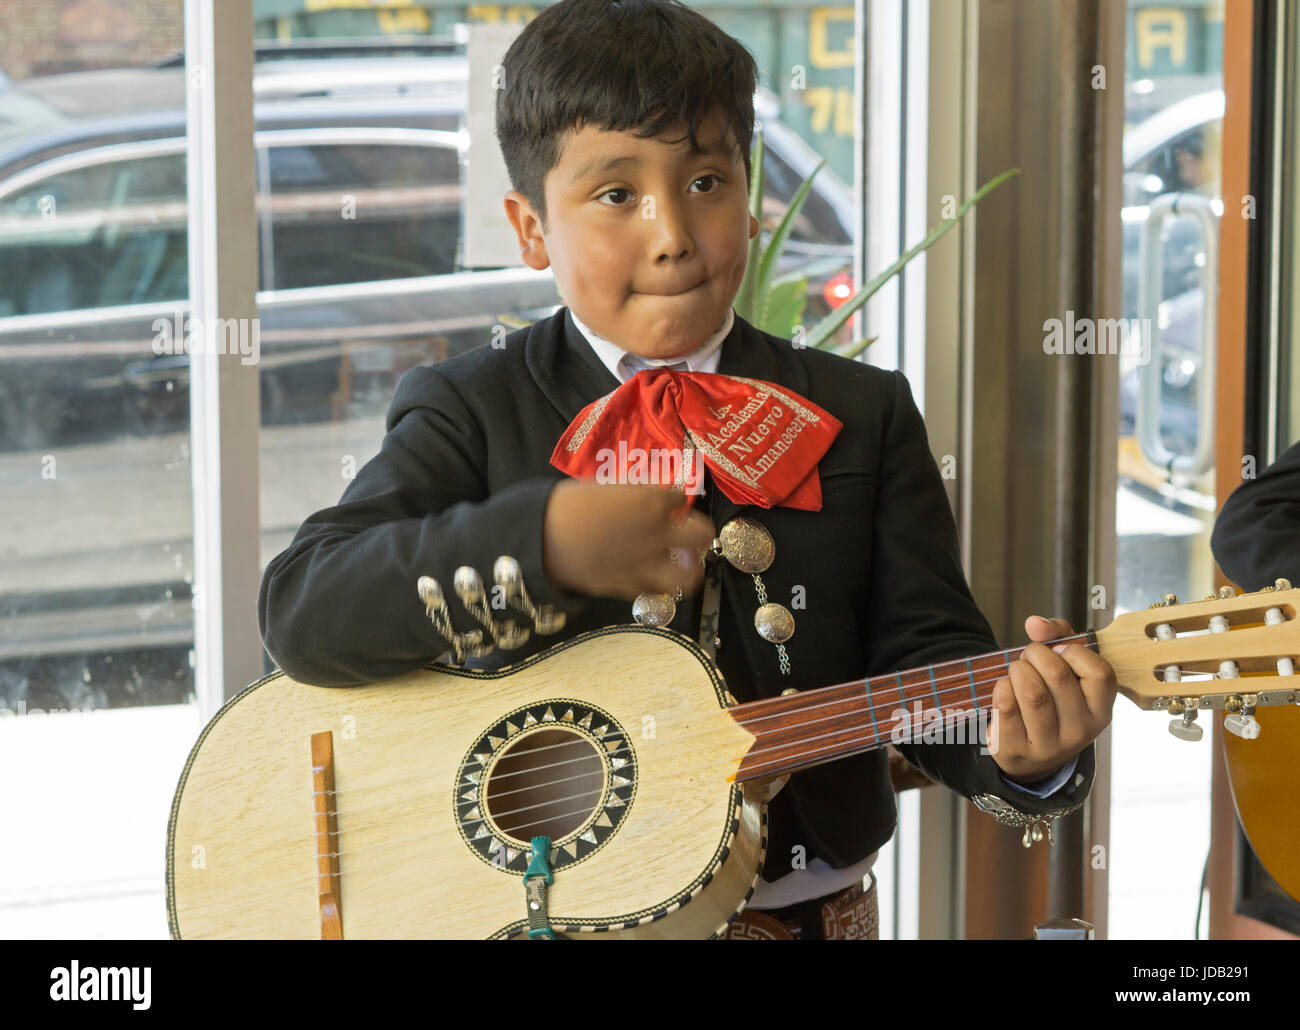 Un jeune membre de l'A.M.N.A. adolescents bandes mariachi joue sur sa guitare dans un restaurant mexicain dans le Nord d'ouverture à Corona, Queens, New York. Banque D'Images